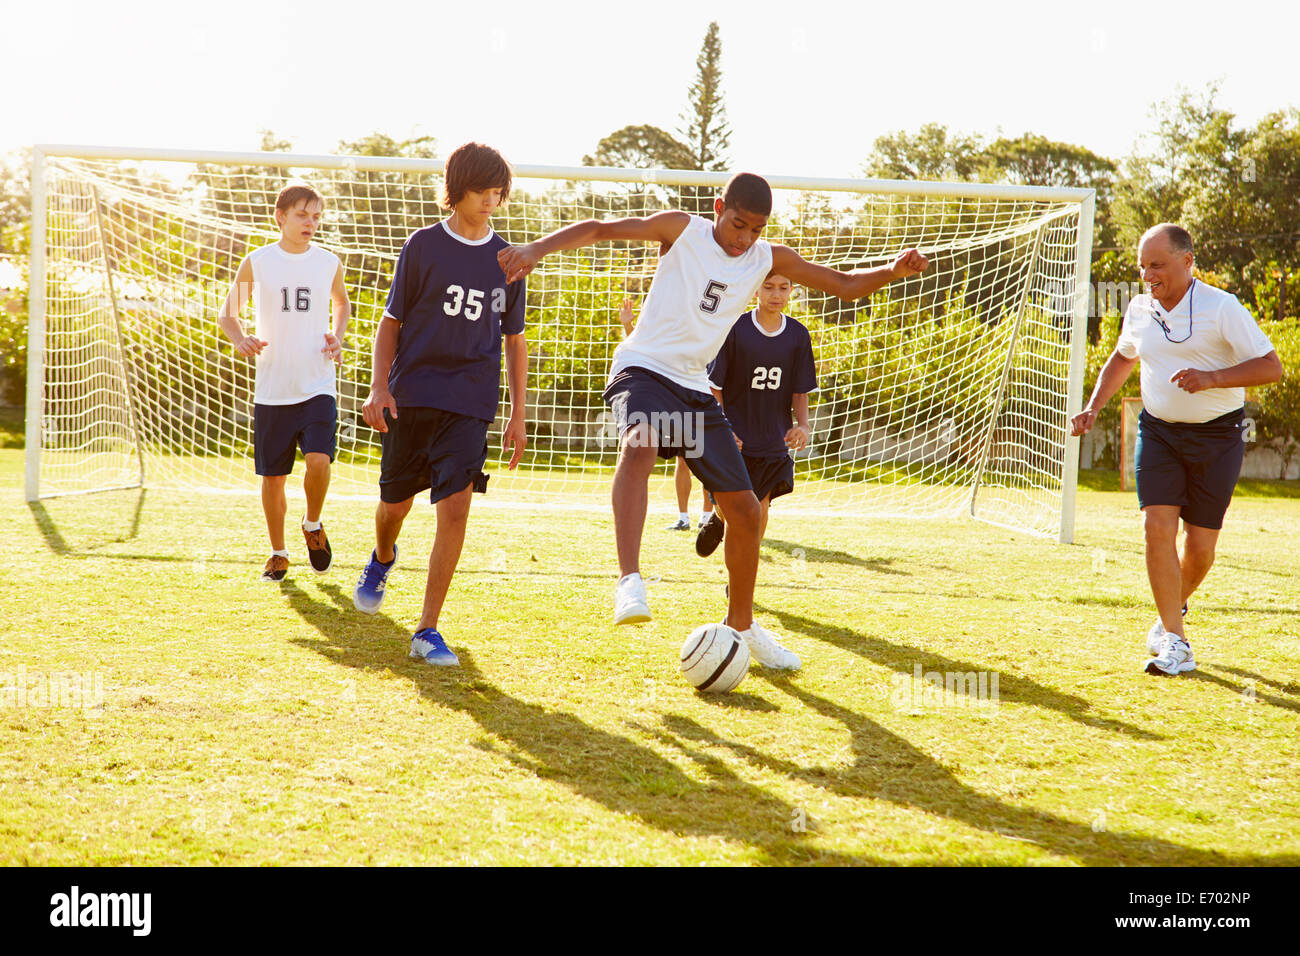 Los miembros de la Escuela Secundaria Masculina jugando fútbol coinciden Foto de stock